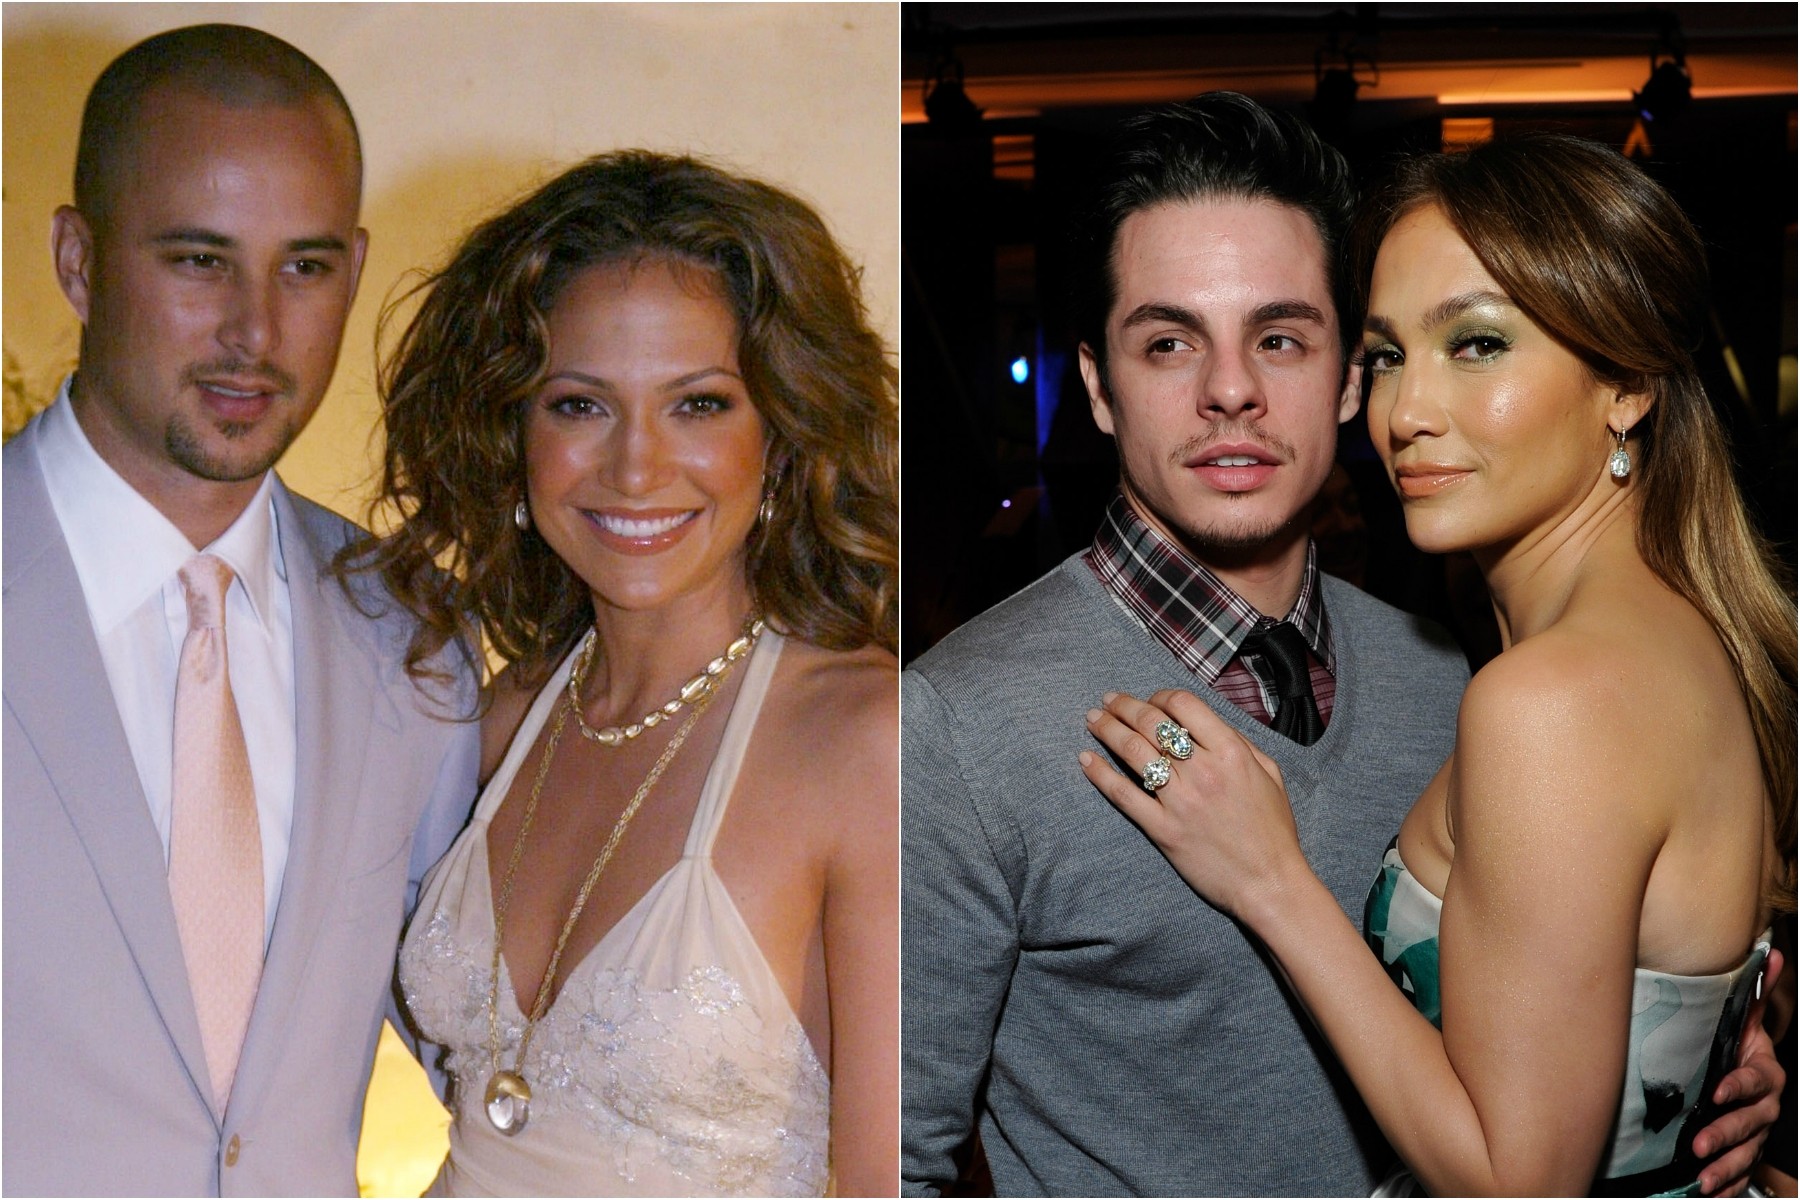 Jennifer Lopez já se relacionou seriamente com ao menos dois dançarinos: Chris Judd (à esq.), com quem chegou a se casar, e Casper Smart, com quem namorou por dois anos — até descobrir que ele a havia traído com pelo menos uma modelo transexual. (Foto: Getty Images)